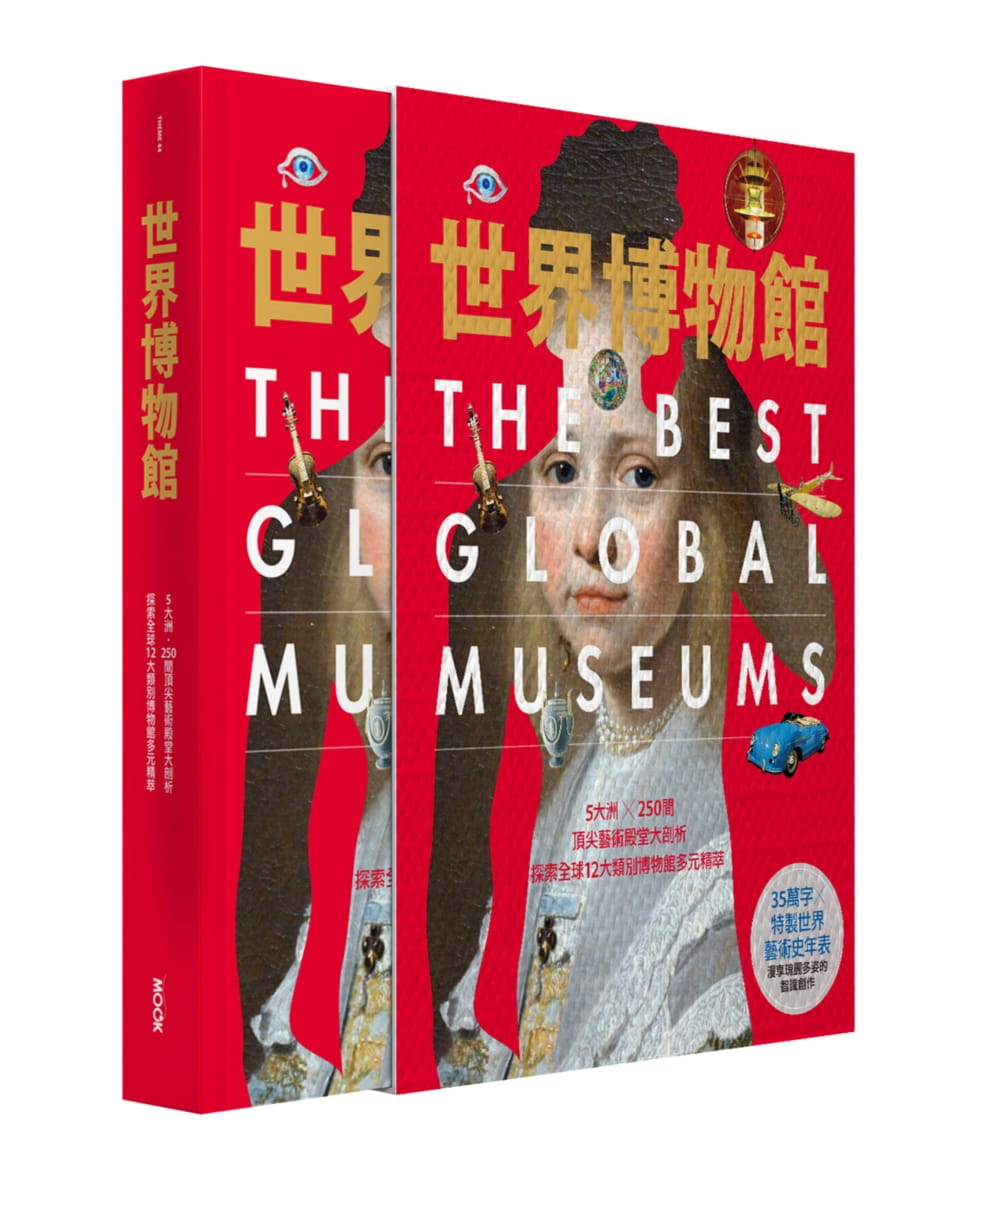 世界博物館：5大洲╳250間頂尖藝術殿堂大剖析•探索全球12大類別博物館多元精萃(精裝版)